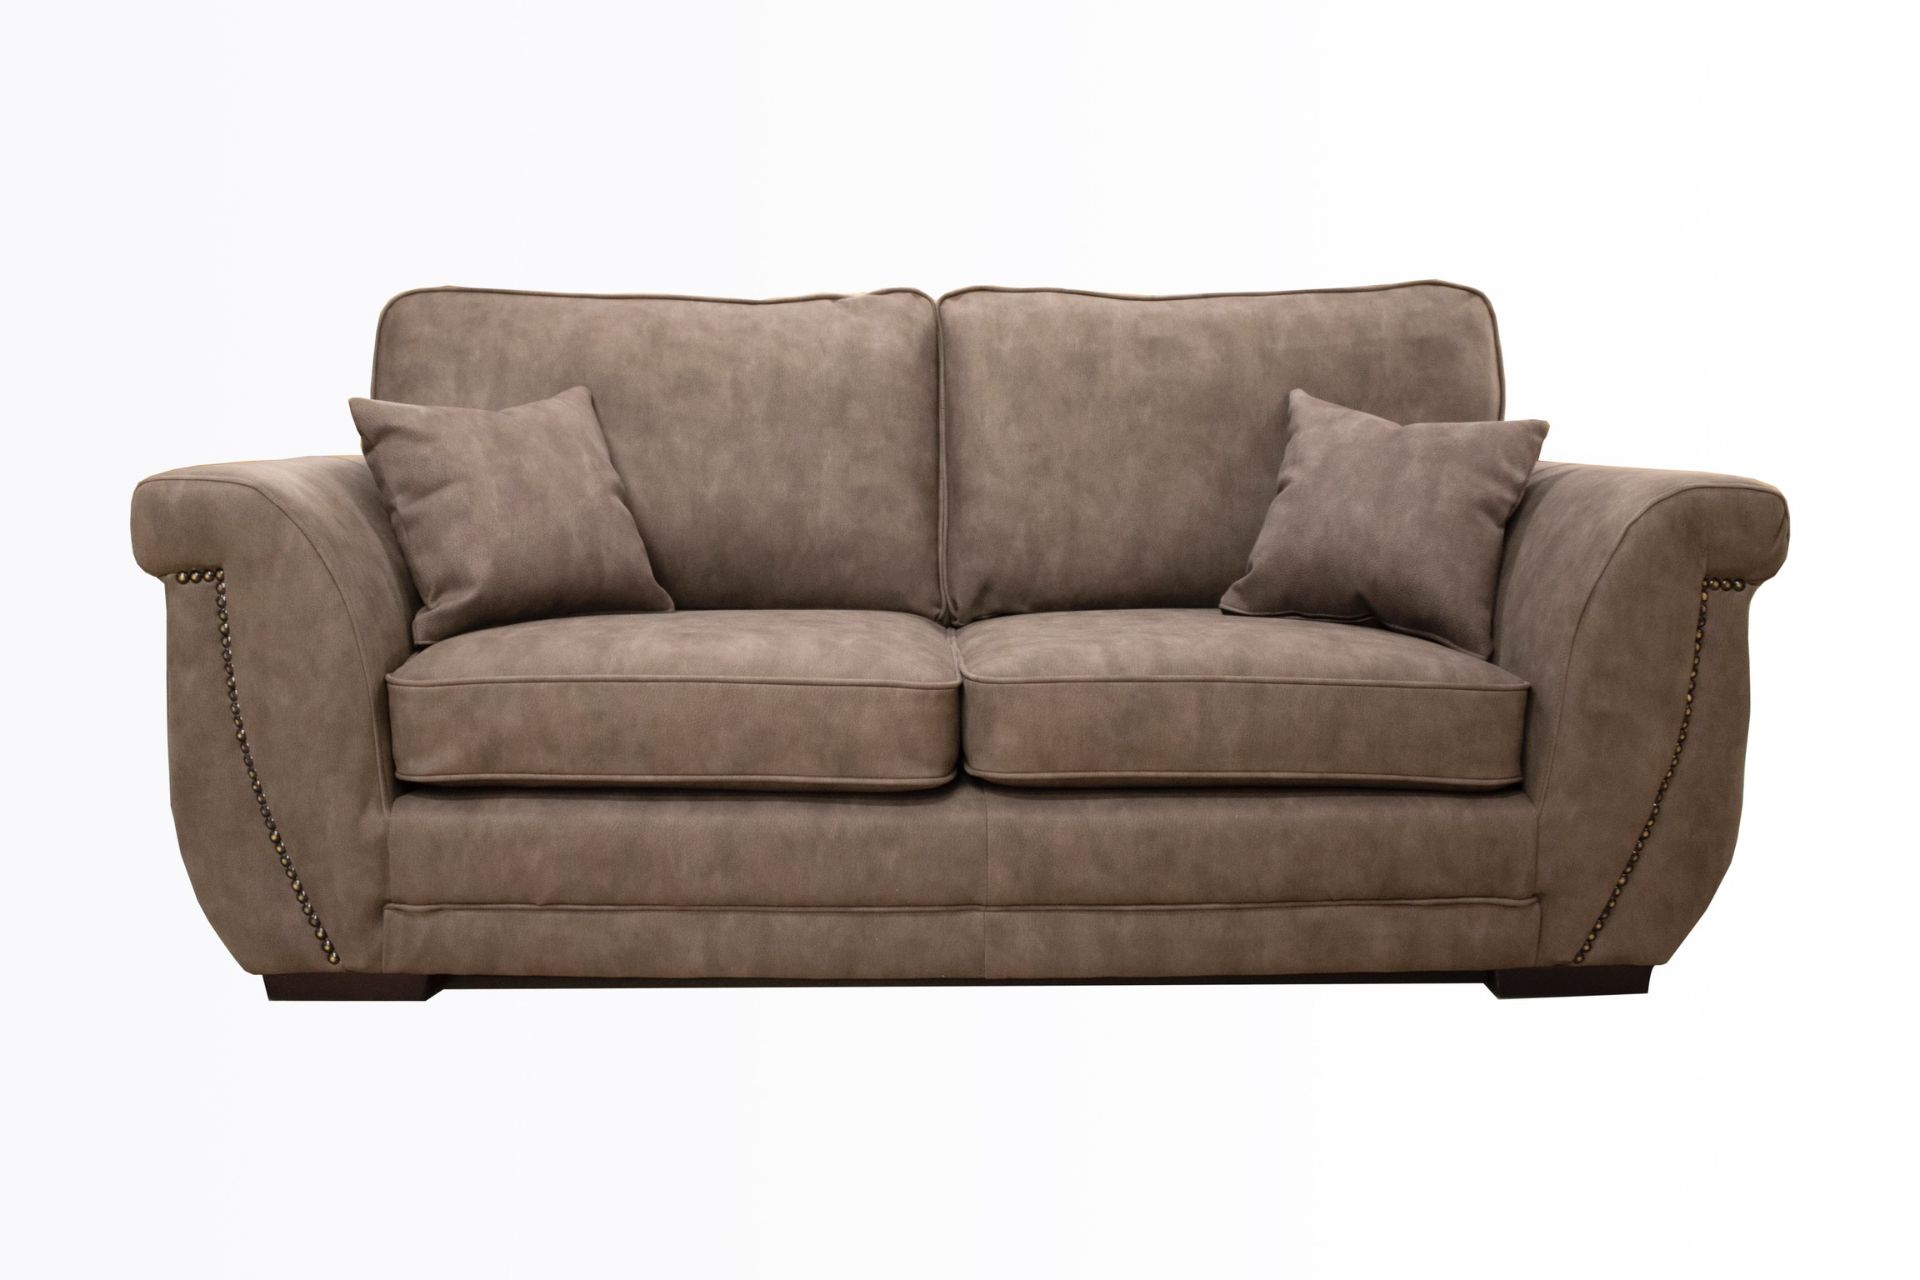 Brand new luxe corner sofa in tan fabric